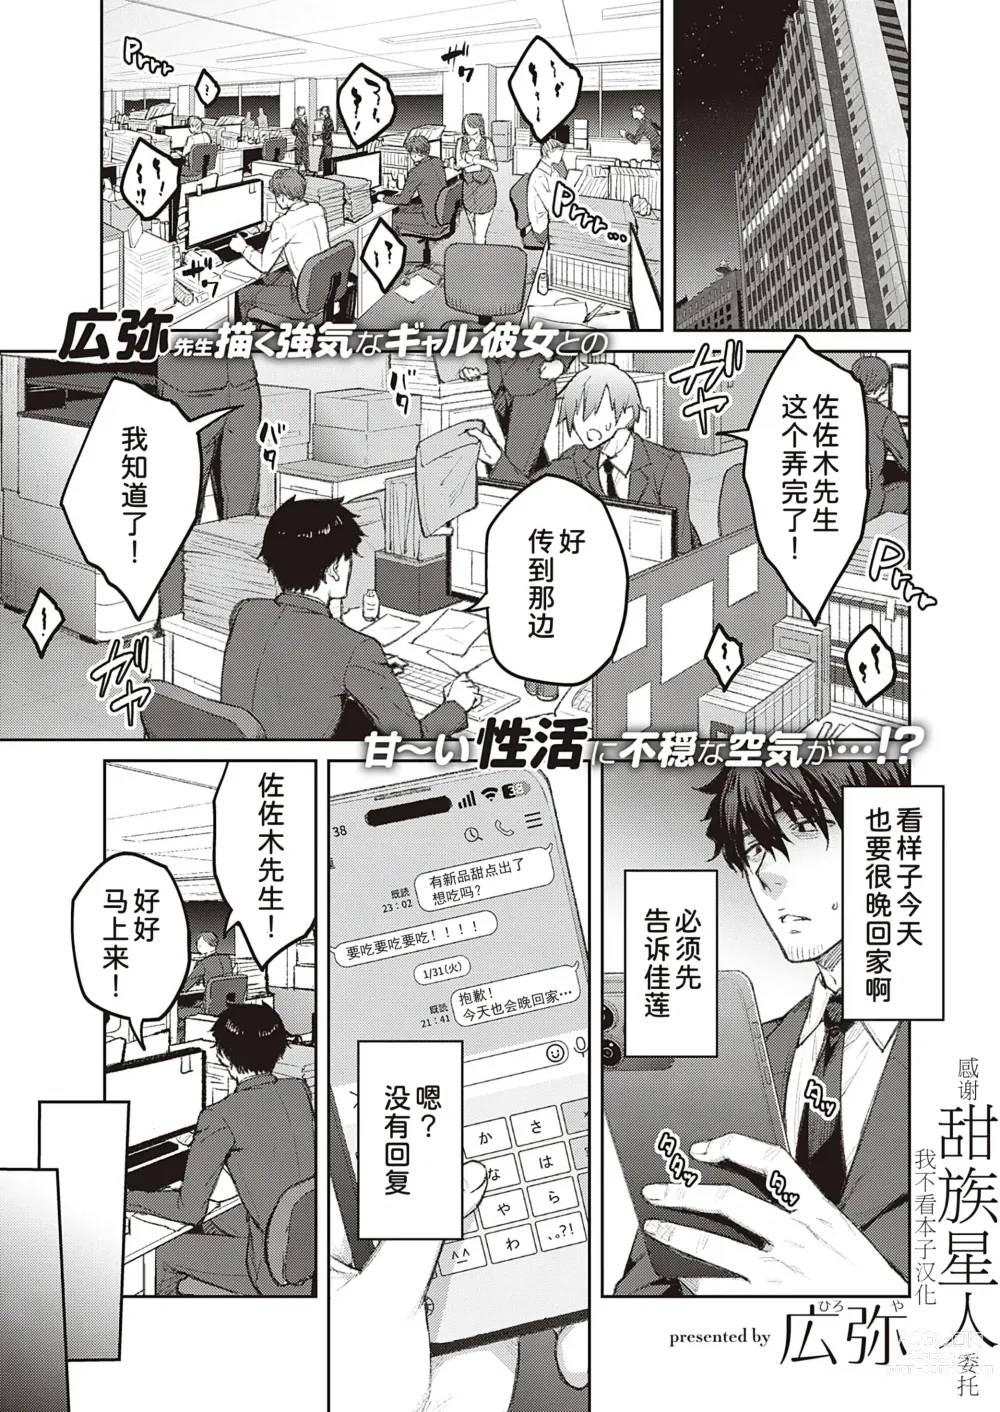 Page 1 of manga Tsugi wa Kou wa Ikanai kara na!3